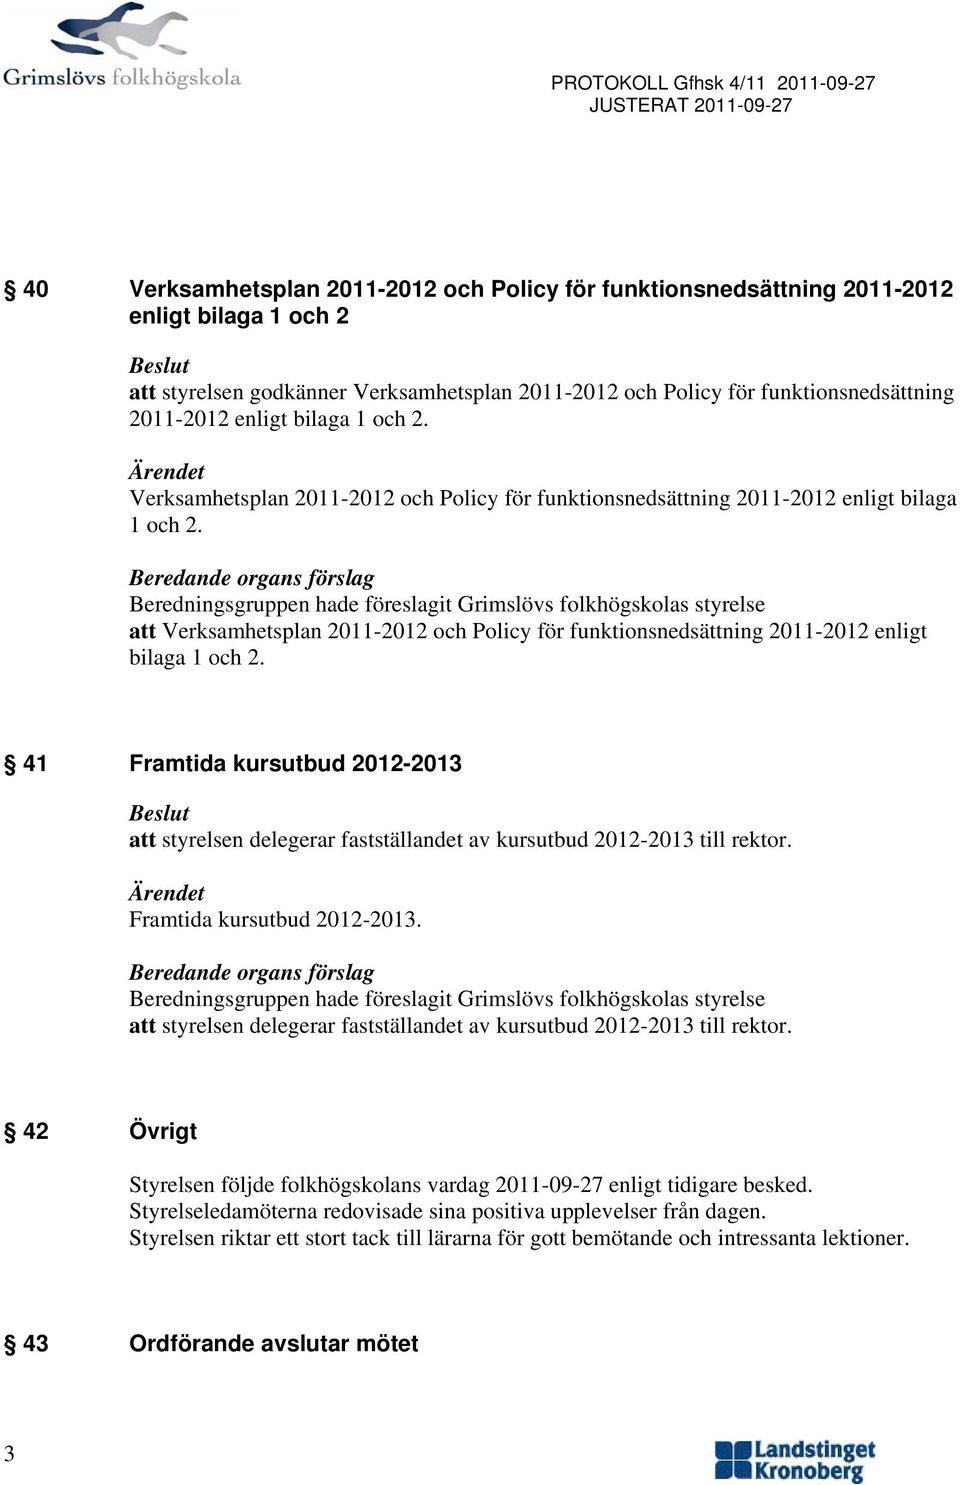 Beredande rgans förslag Beredningsgruppen hade föreslagit Grimslövs flkhögsklas styrelse att Verksamhetsplan 2011-2012 ch Plicy för funktinsnedsättning 2011-2012 enligt bilaga 1 ch 2.